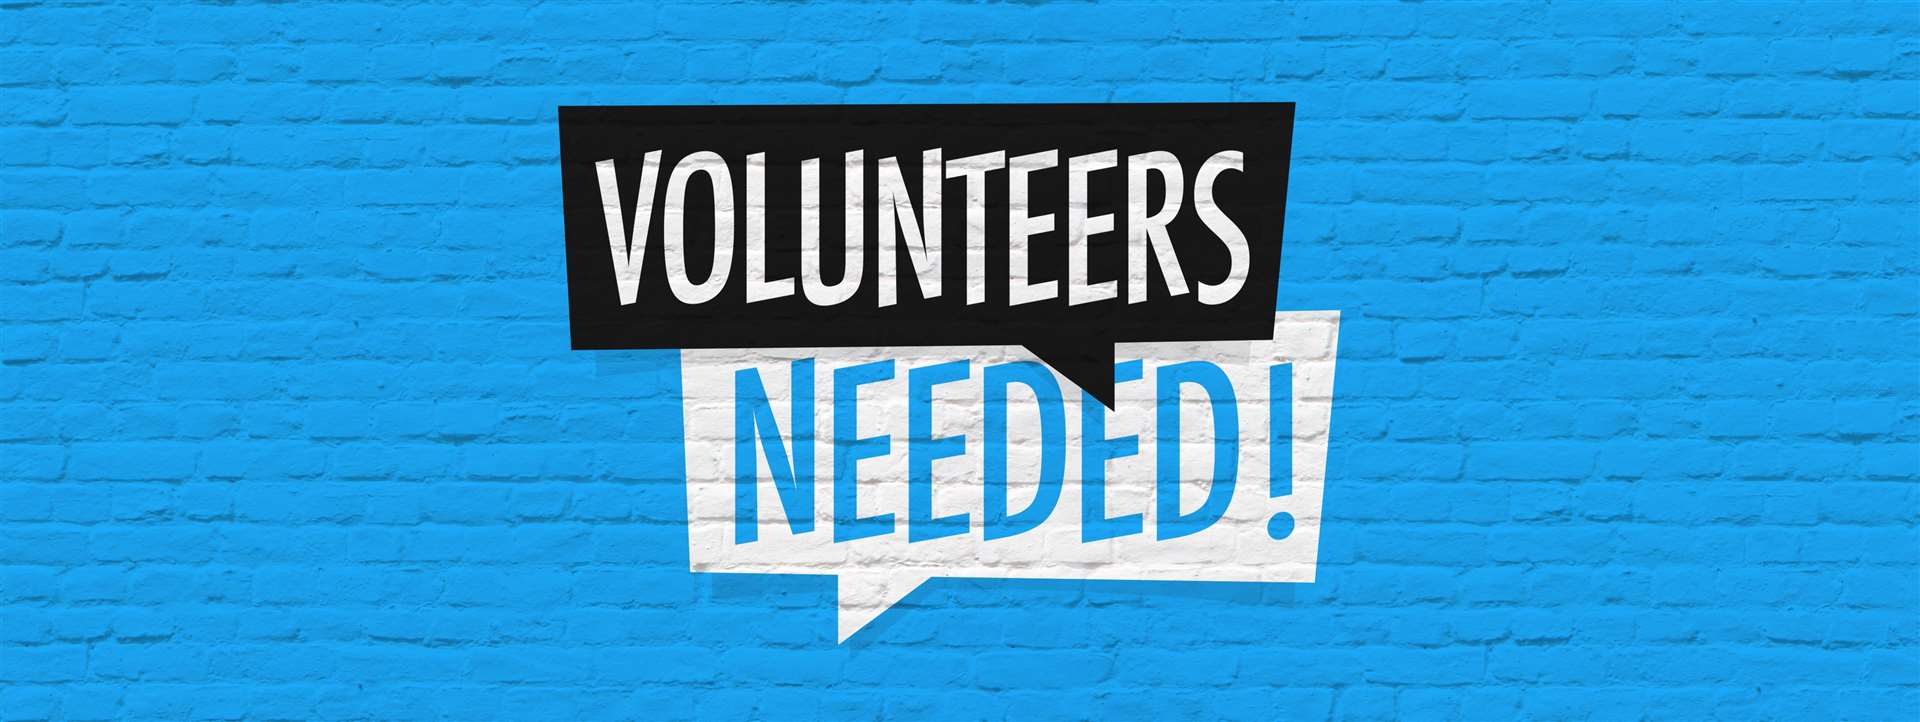 Volunteers needed.